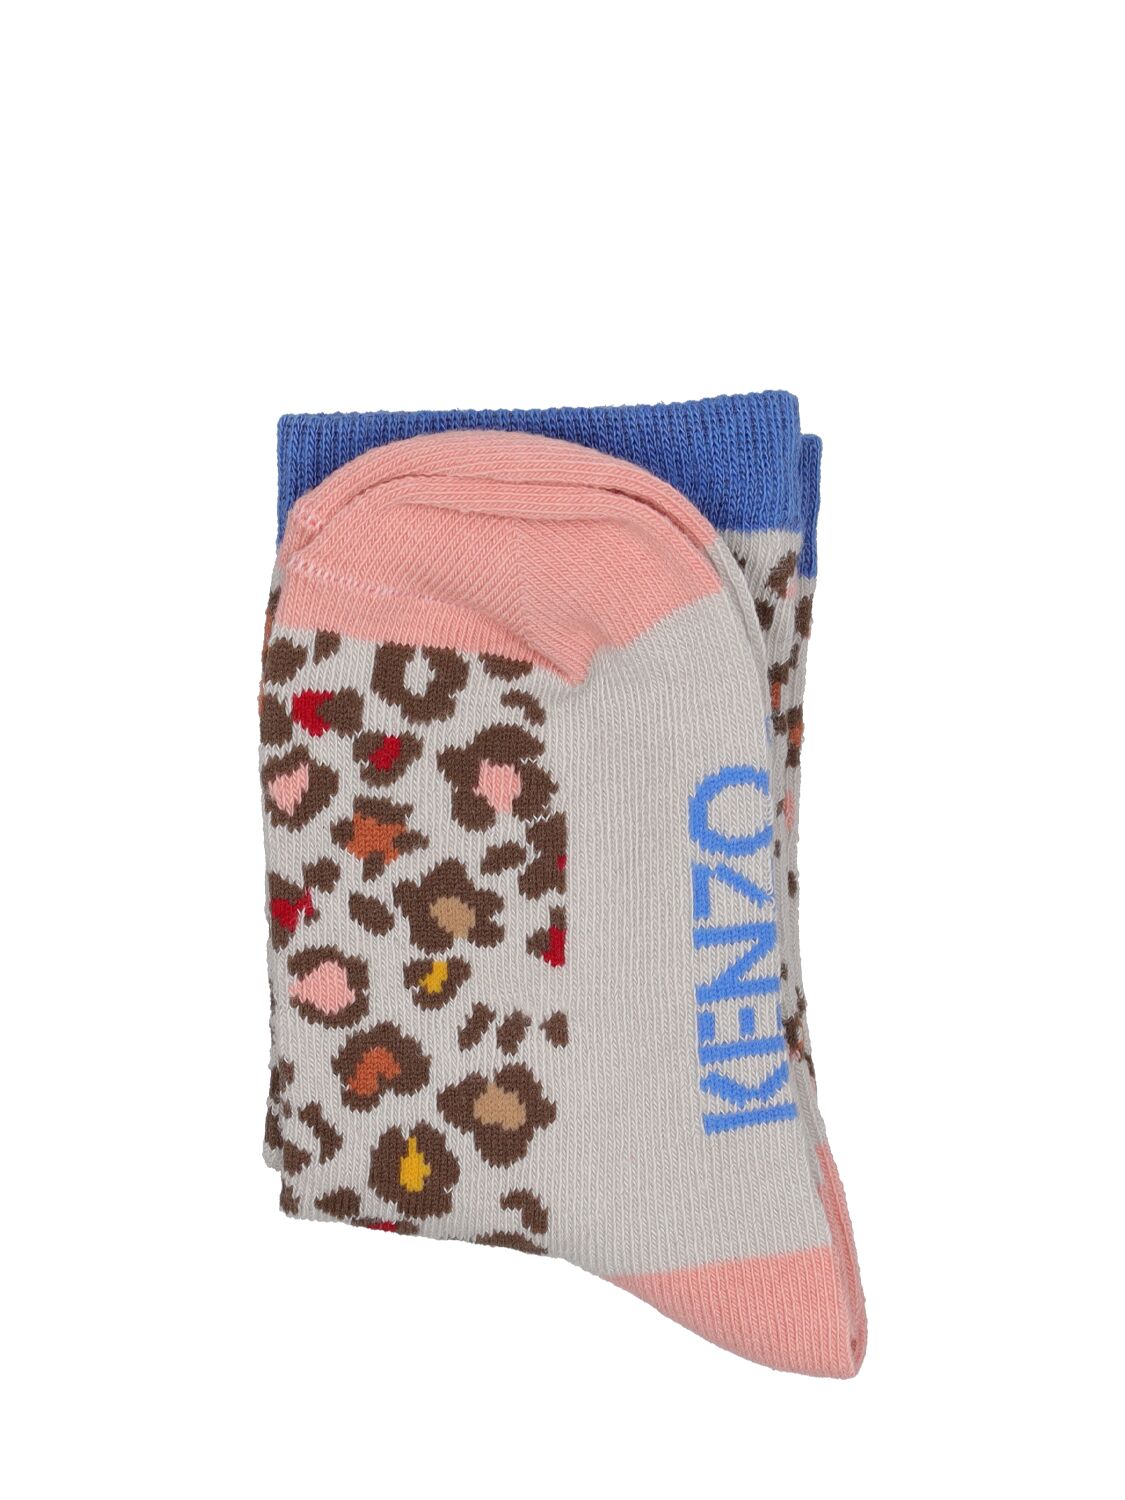 Kenzo Kids' Cotton Blend Knit Socks W/logo In Multicolor